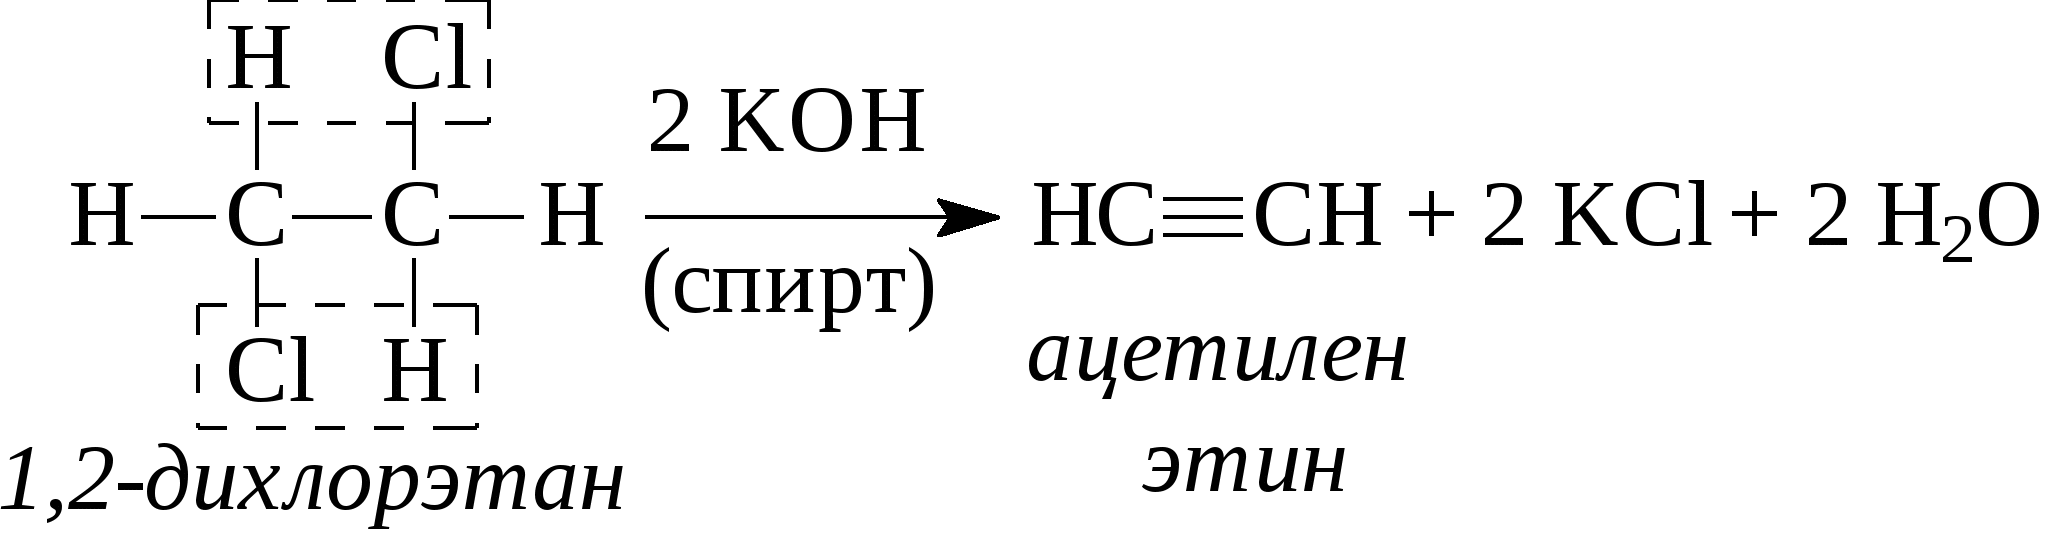 Ацетилен в 11 дихлорэтан. 1 2 Дихлорэтан этин. 1 2 Дихлорэтан ацетилен реакция. Ch кислотность алкинов. Ацетилен и натрий реакция